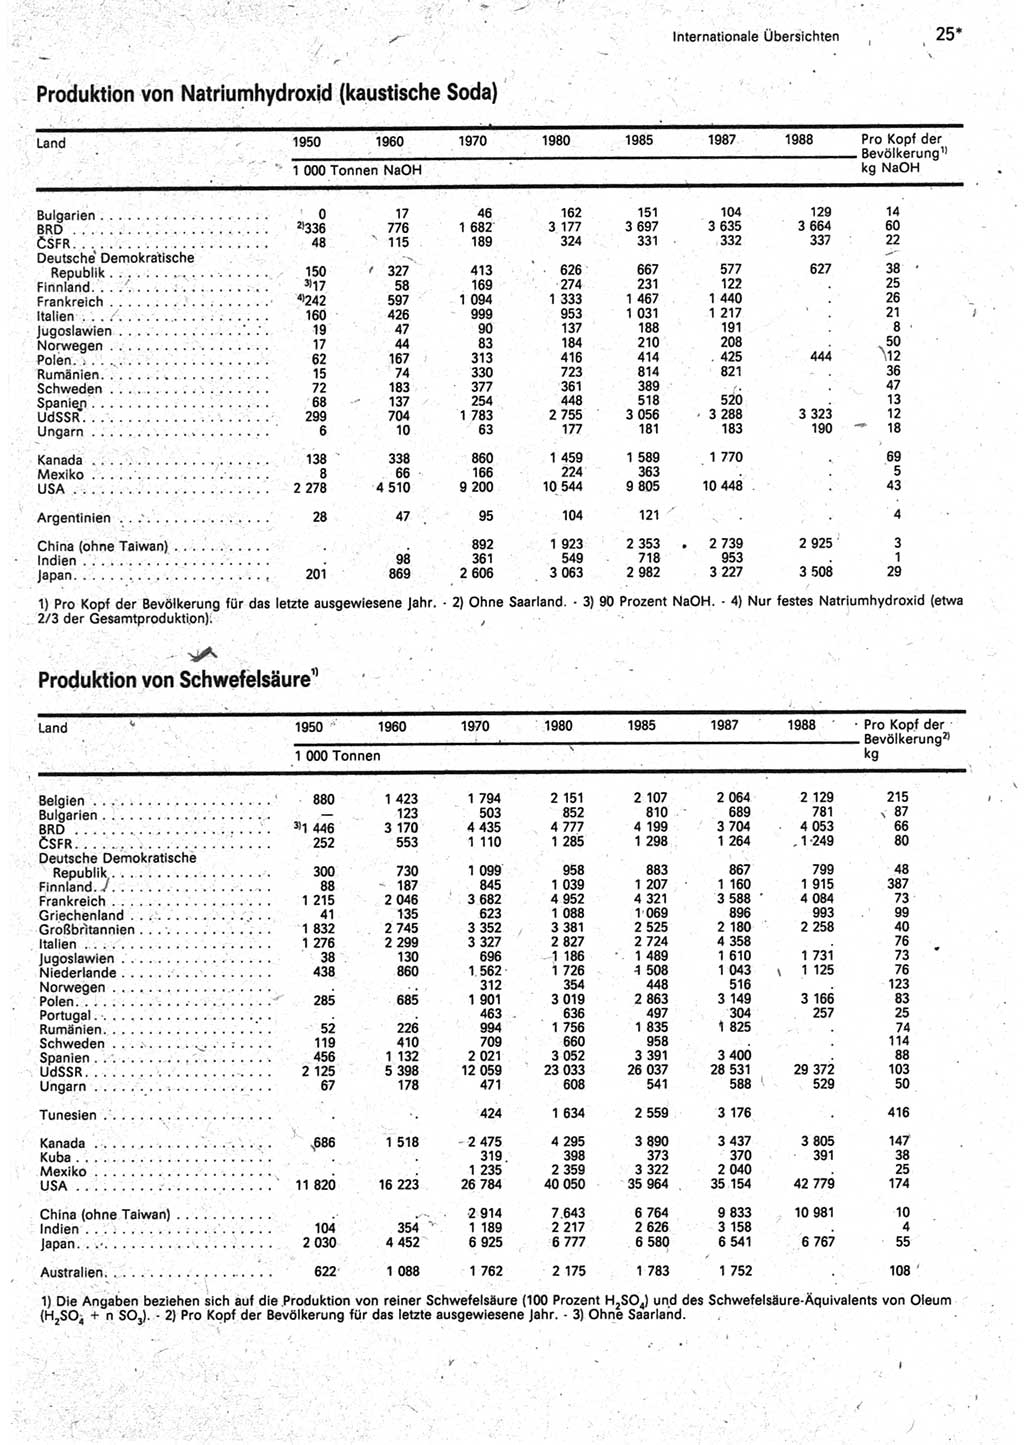 Statistisches Jahrbuch der Deutschen Demokratischen Republik (DDR) 1990, Seite 25 (Stat. Jb. DDR 1990, S. 25)